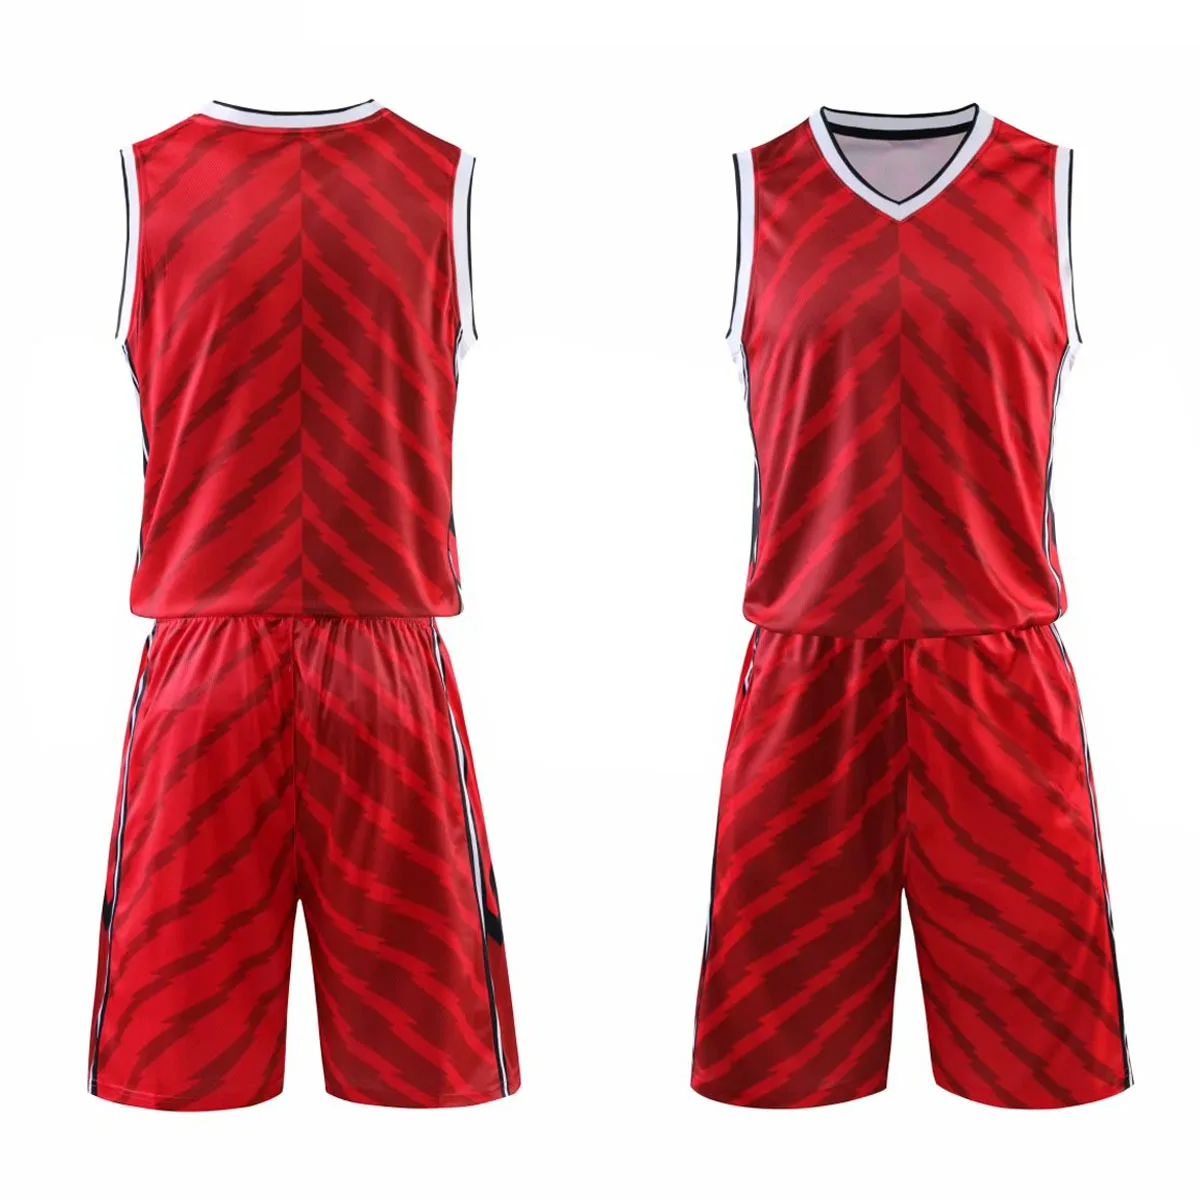 Быстросохнущие мужские баскетбольные майки, Молодежная форма для баскетбола, на заказ, спортивная одежда, костюм, майки, шорты, плюс размер